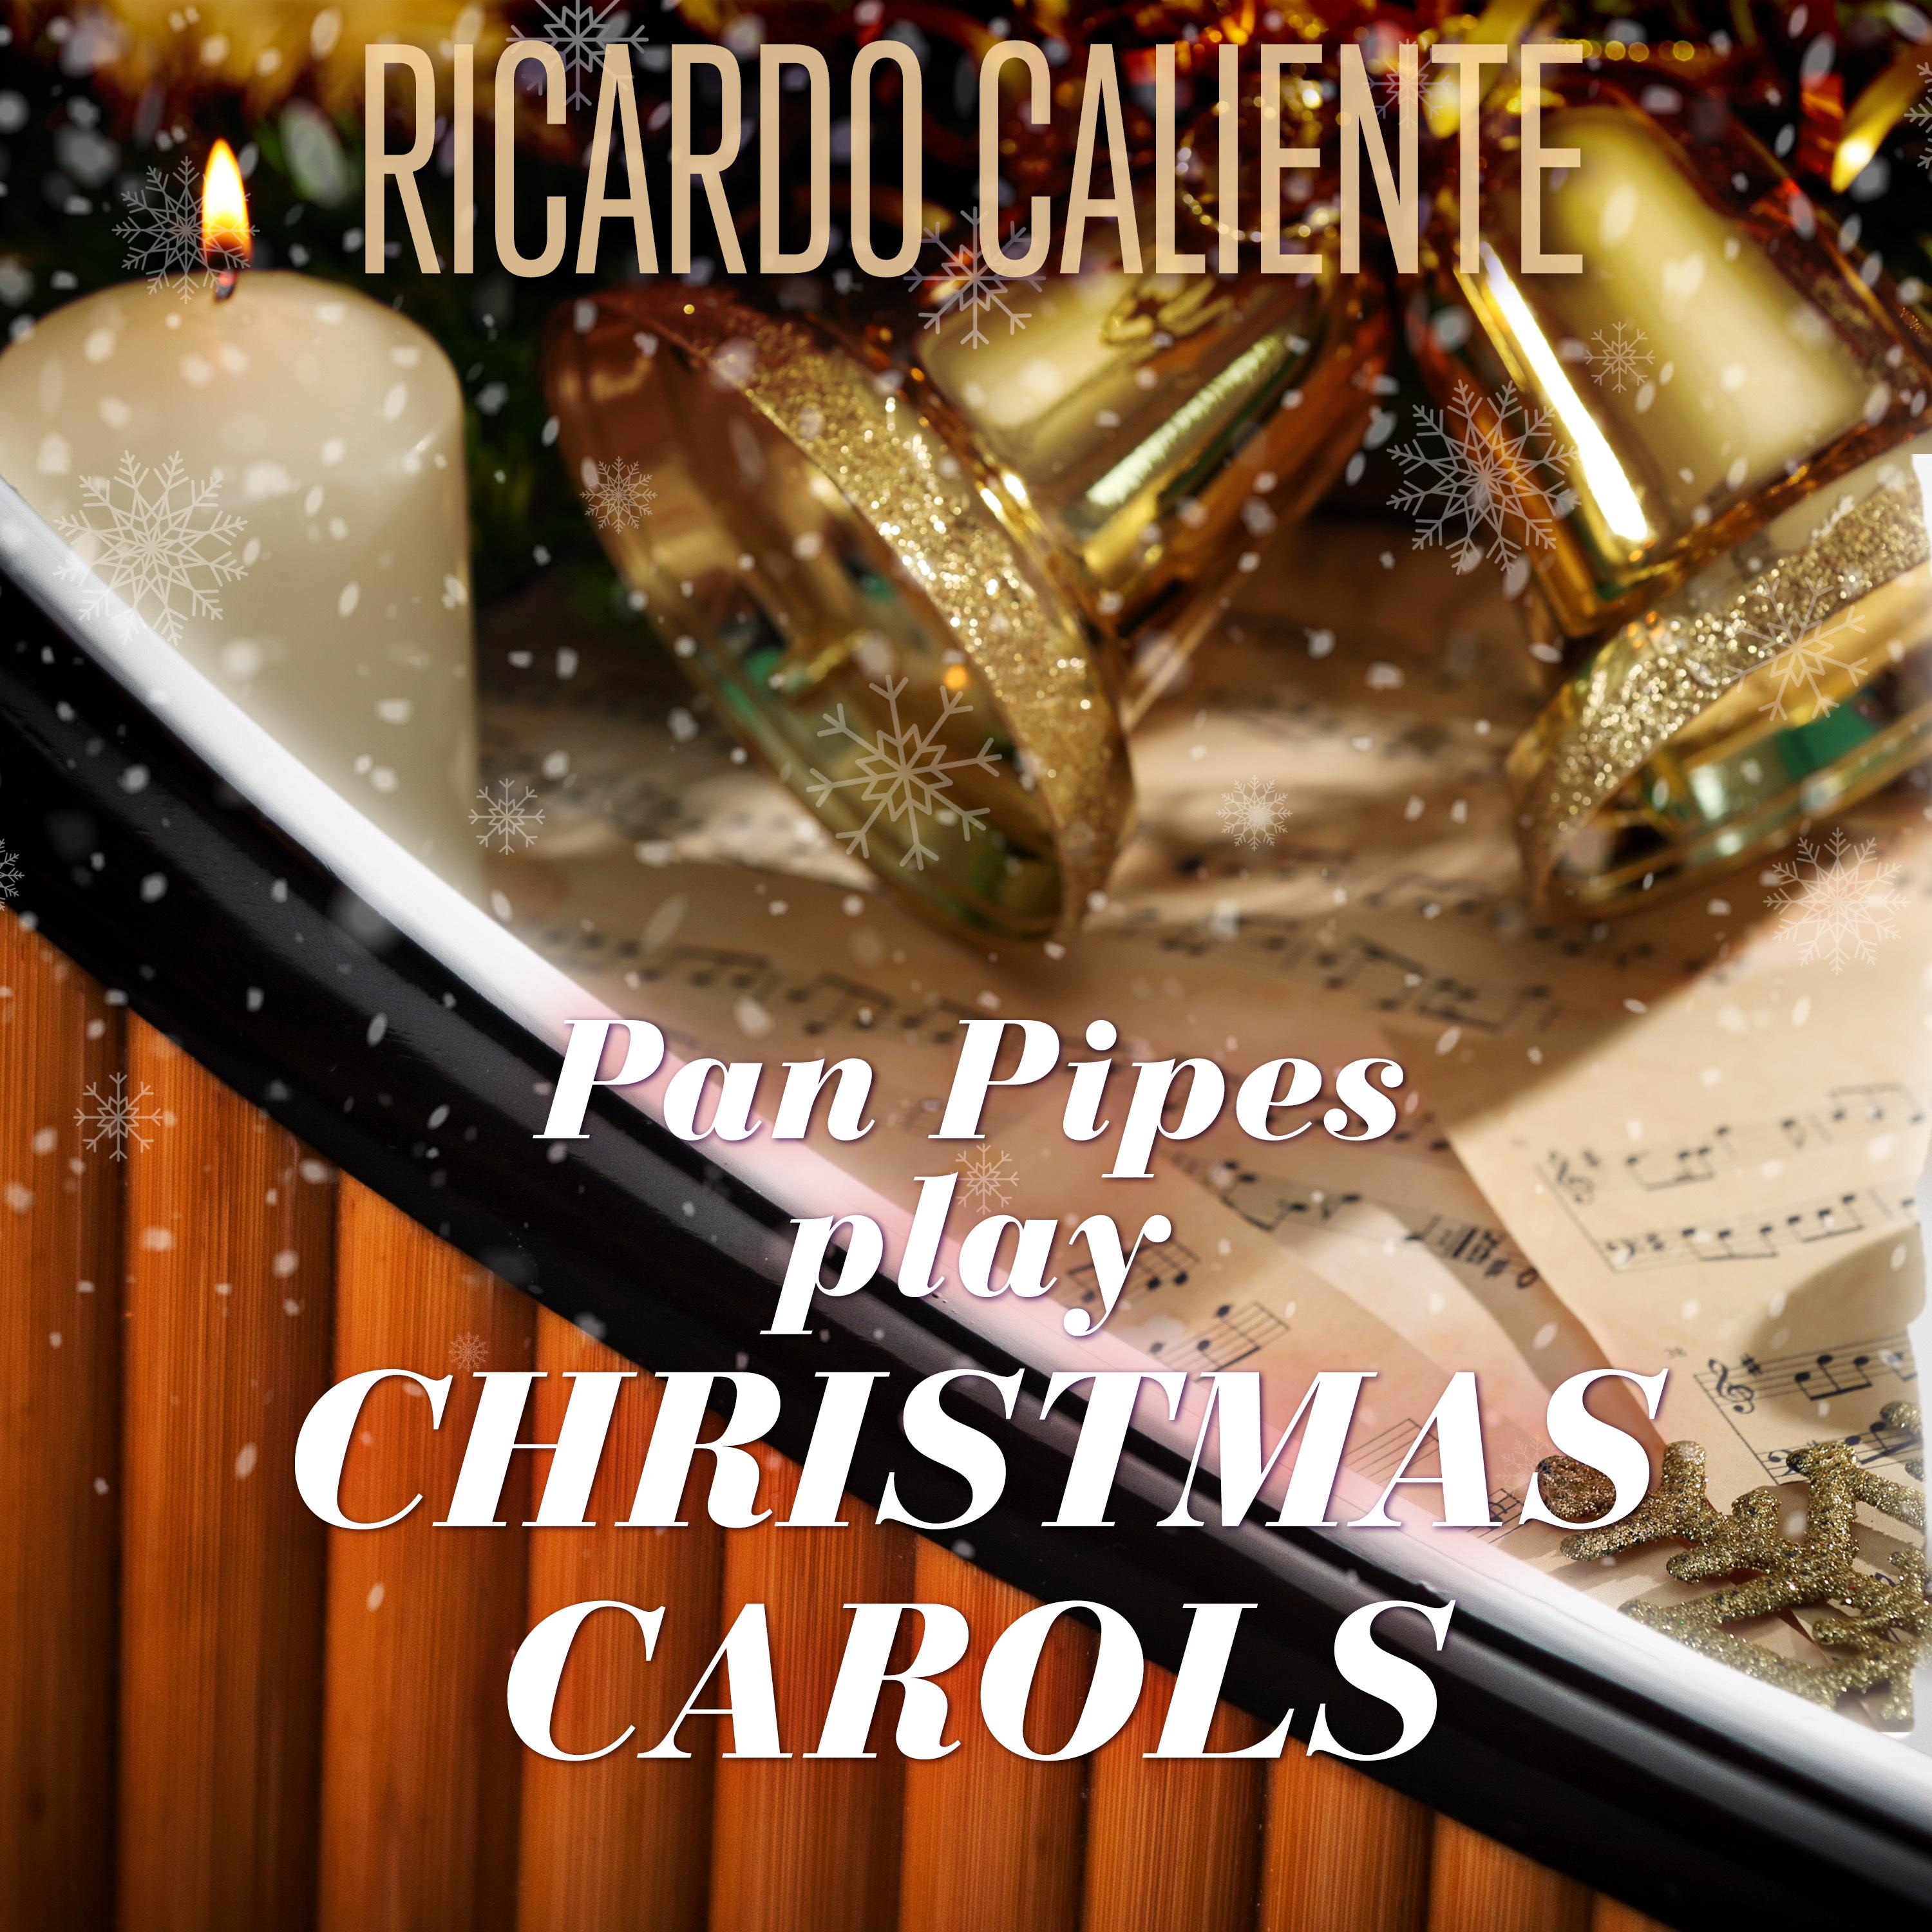 Pan Pipes play Christmas Carols